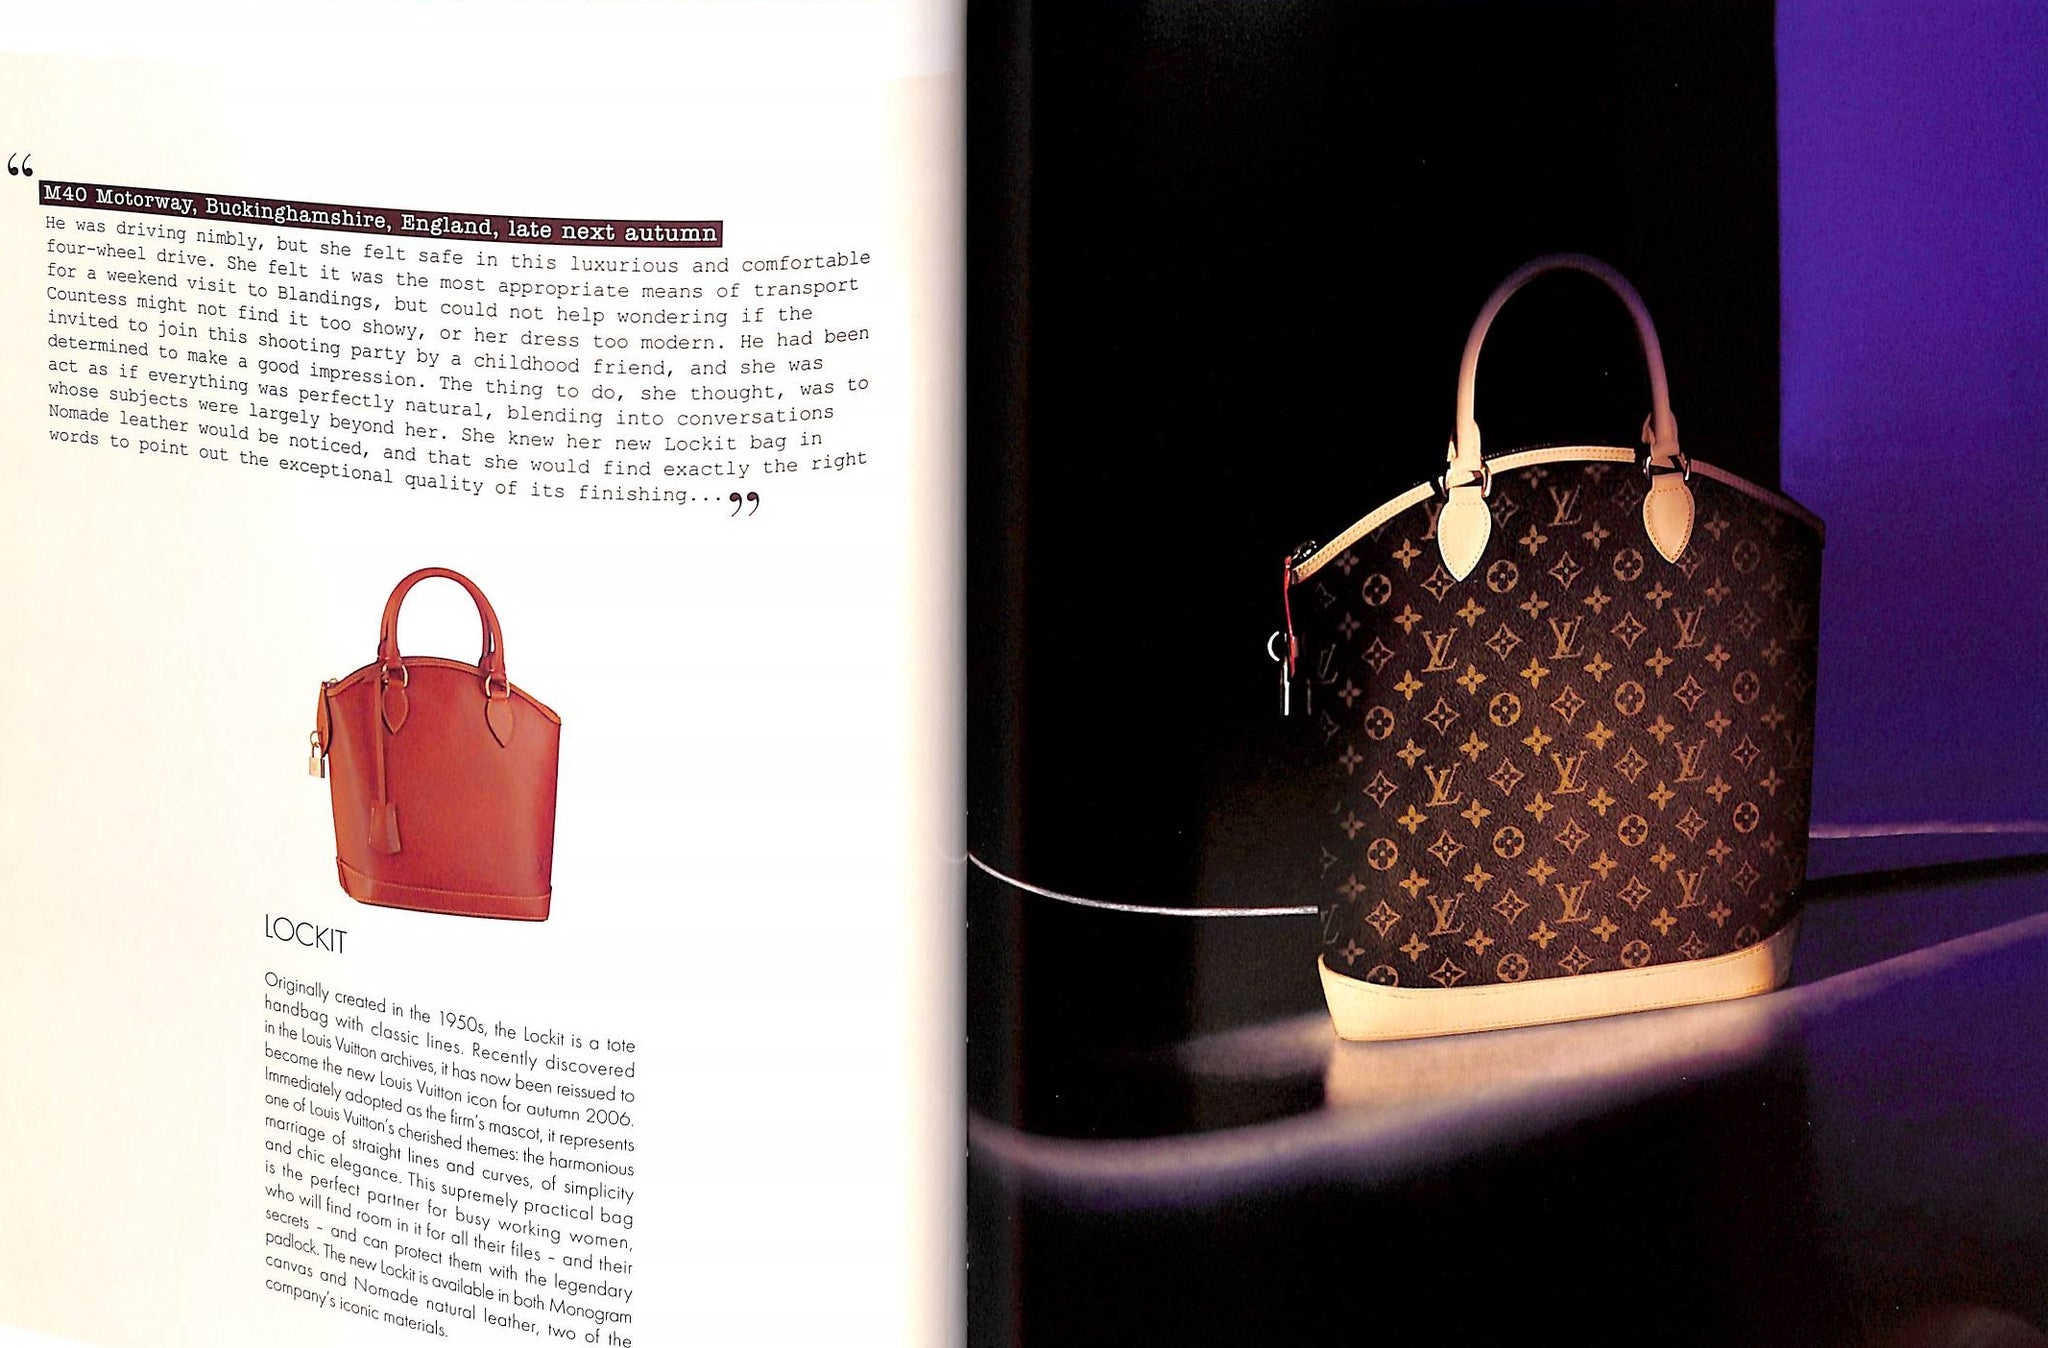 Louis Vuitton 2006